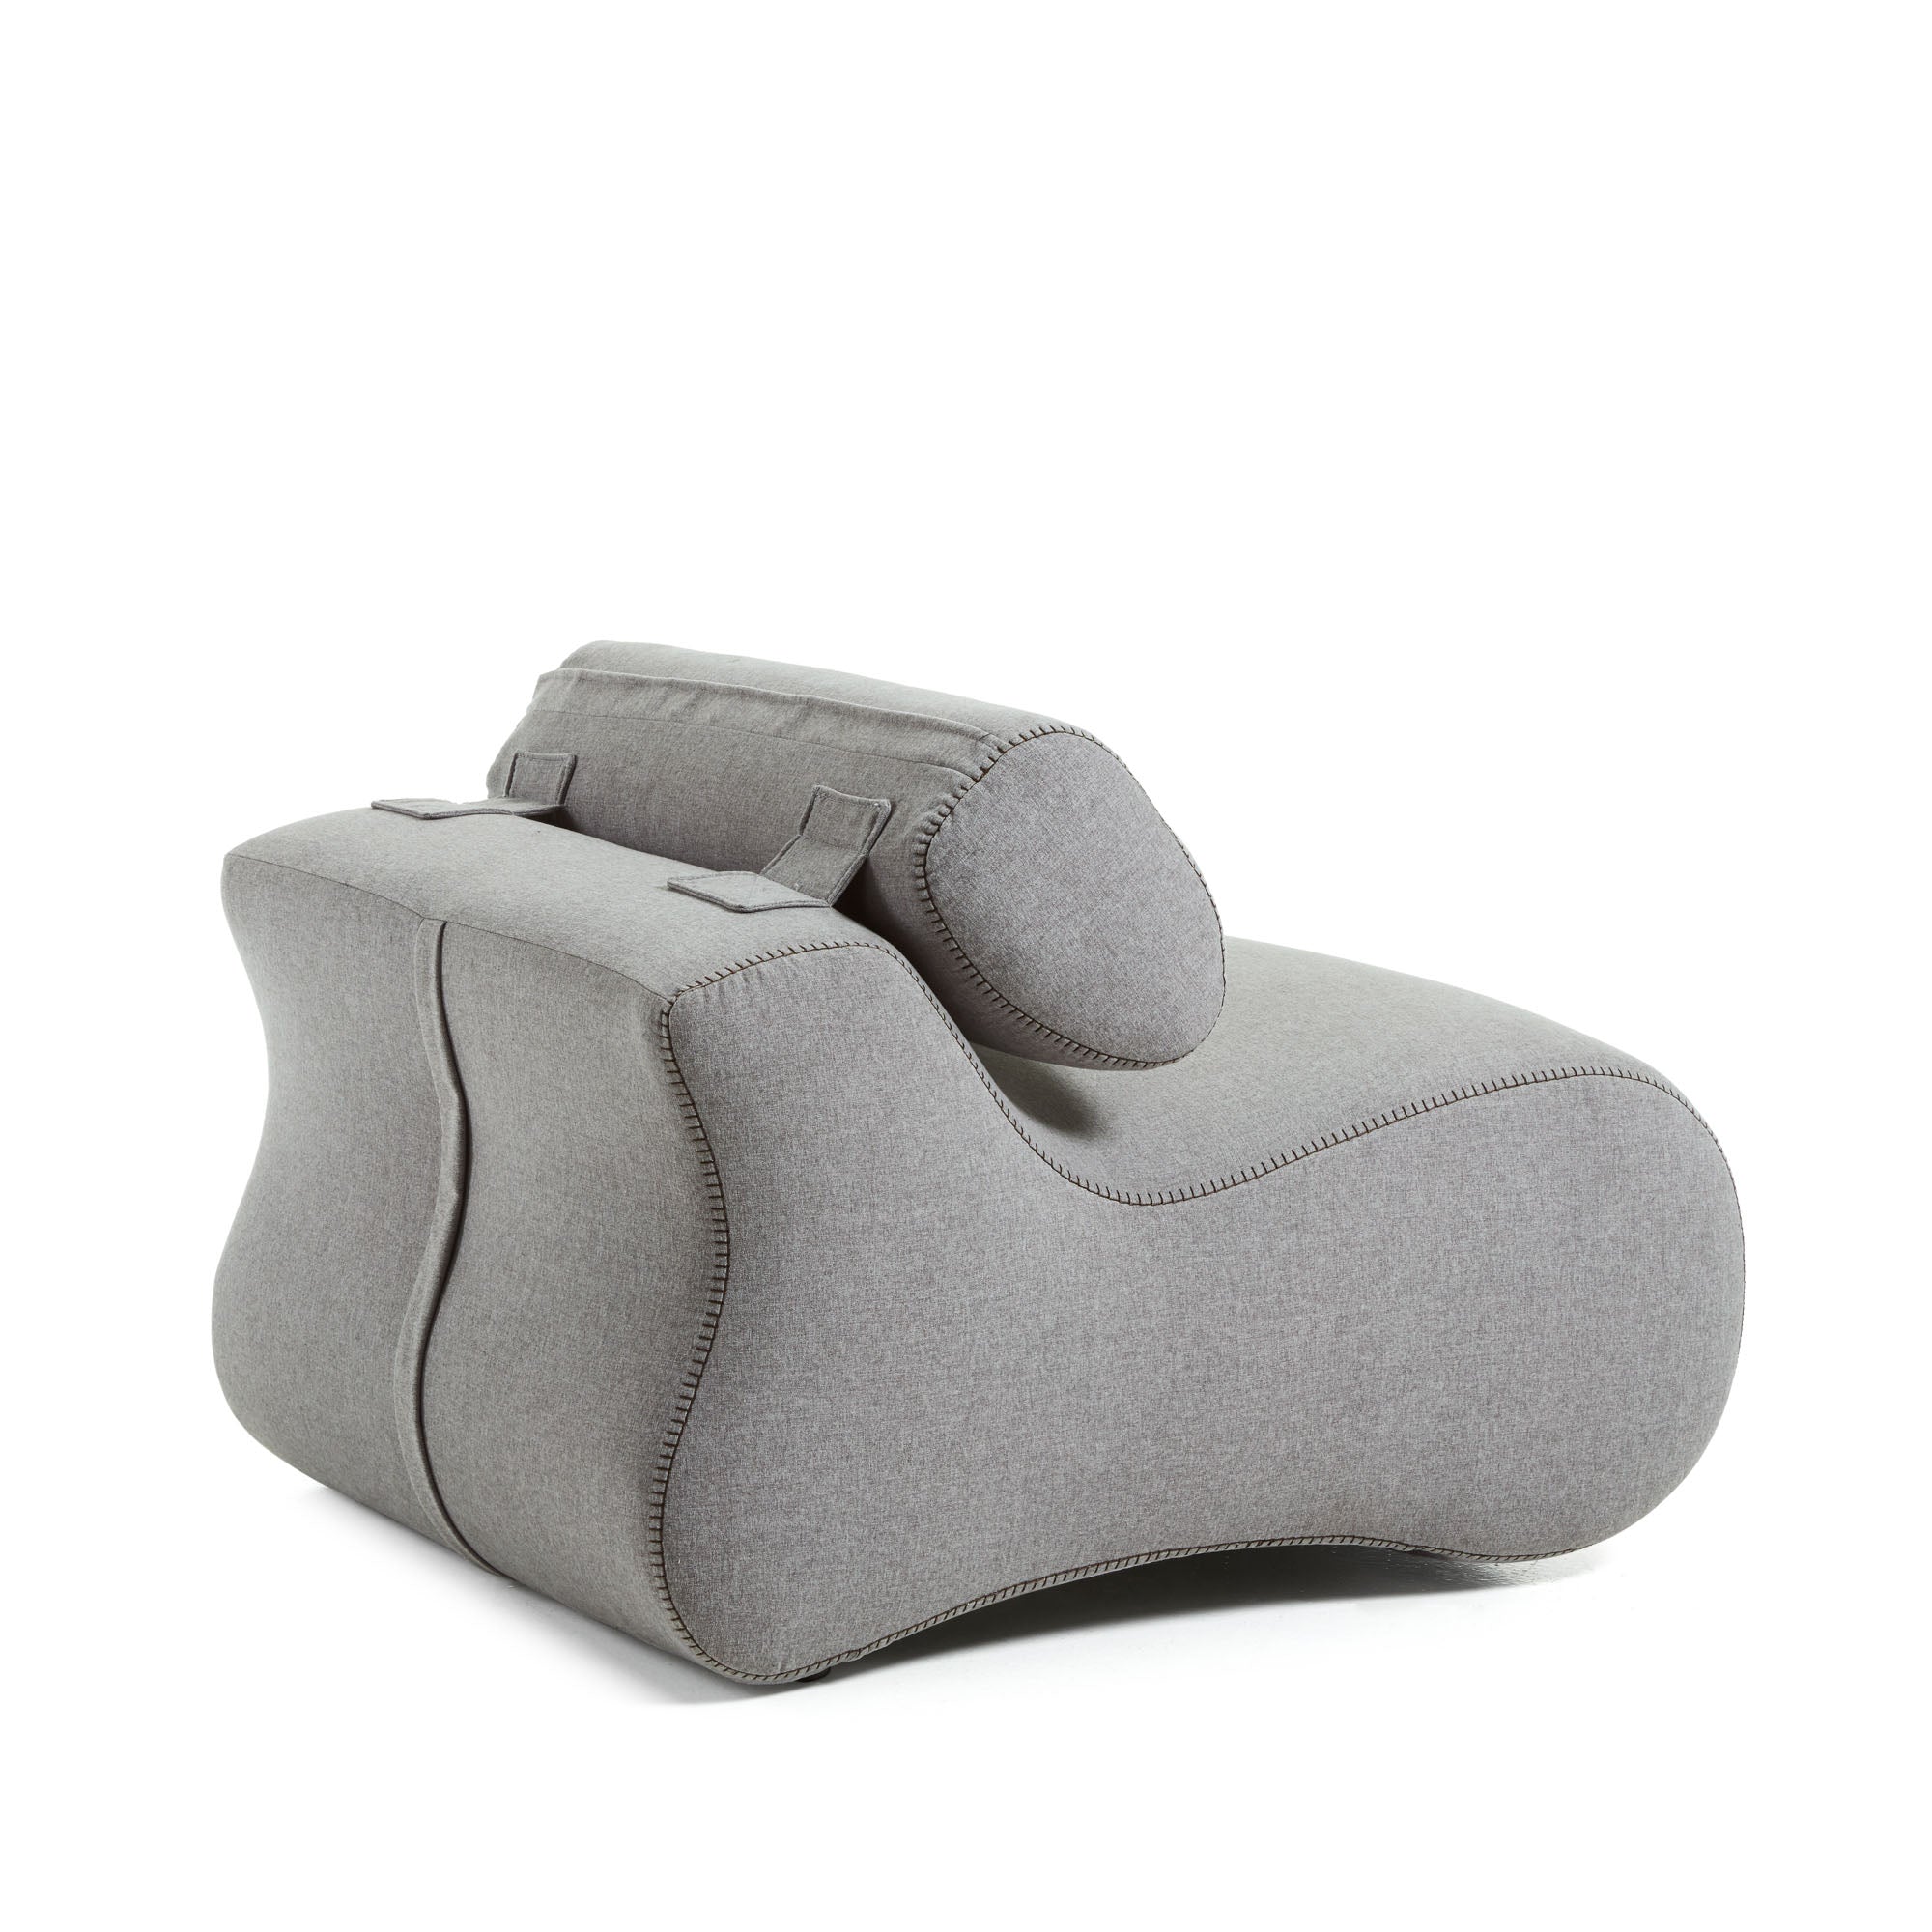 Club armchair in grey